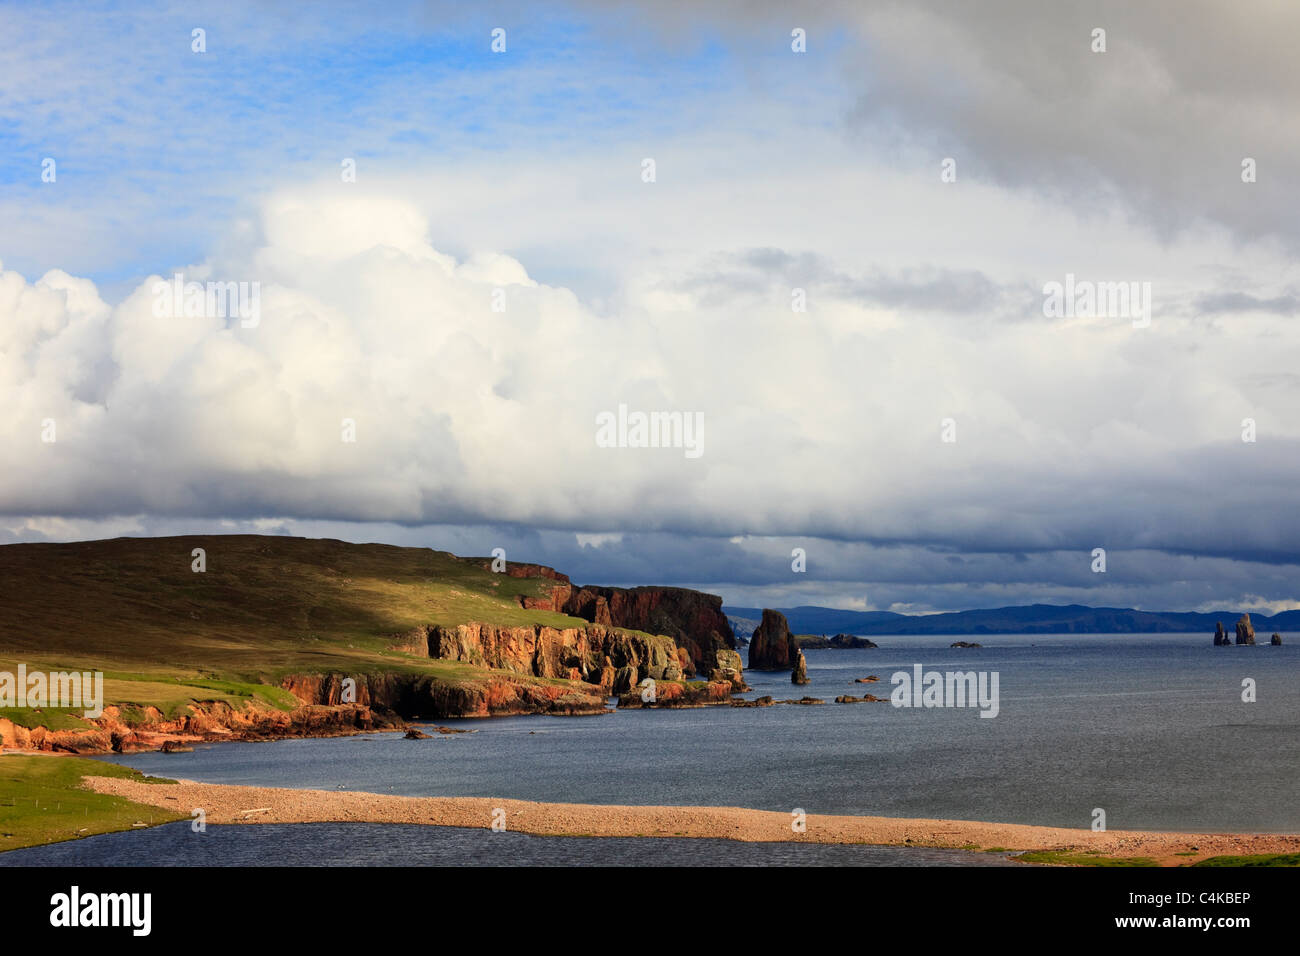 Küstenlandschaft mit Blick über die Bucht zu den Braewick Neap Klippen und Drongs aus rotem Sandstein sea Stacks. Eshaness, Shetlandinseln, Schottland, Großbritannien. Stockfoto